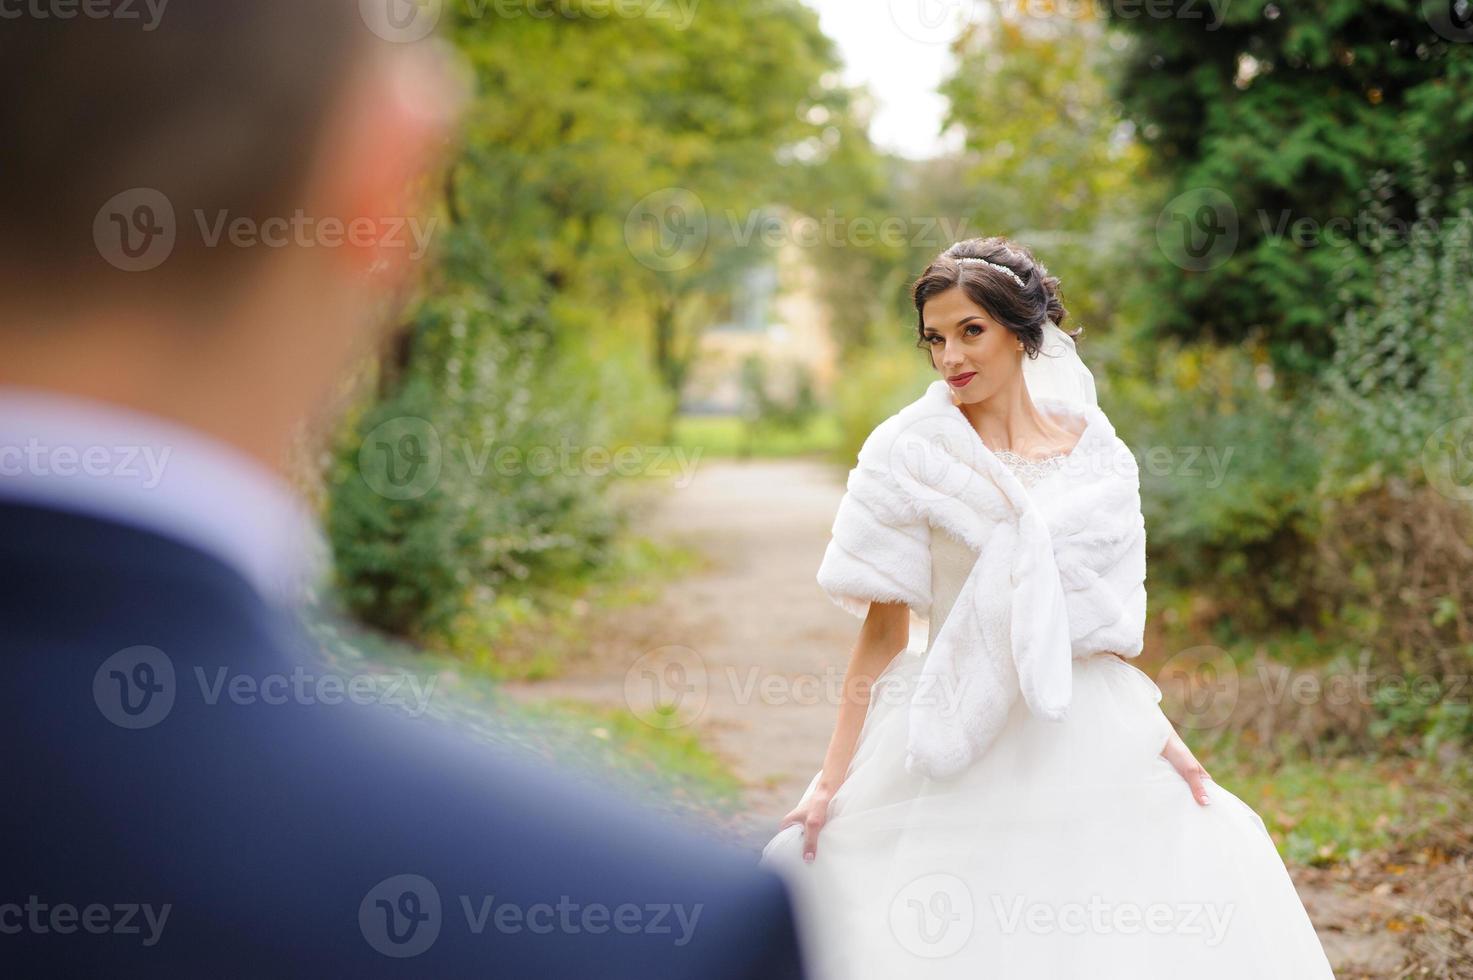 de bruid en bruidegom op de achtergrond van het herfstpark. foto